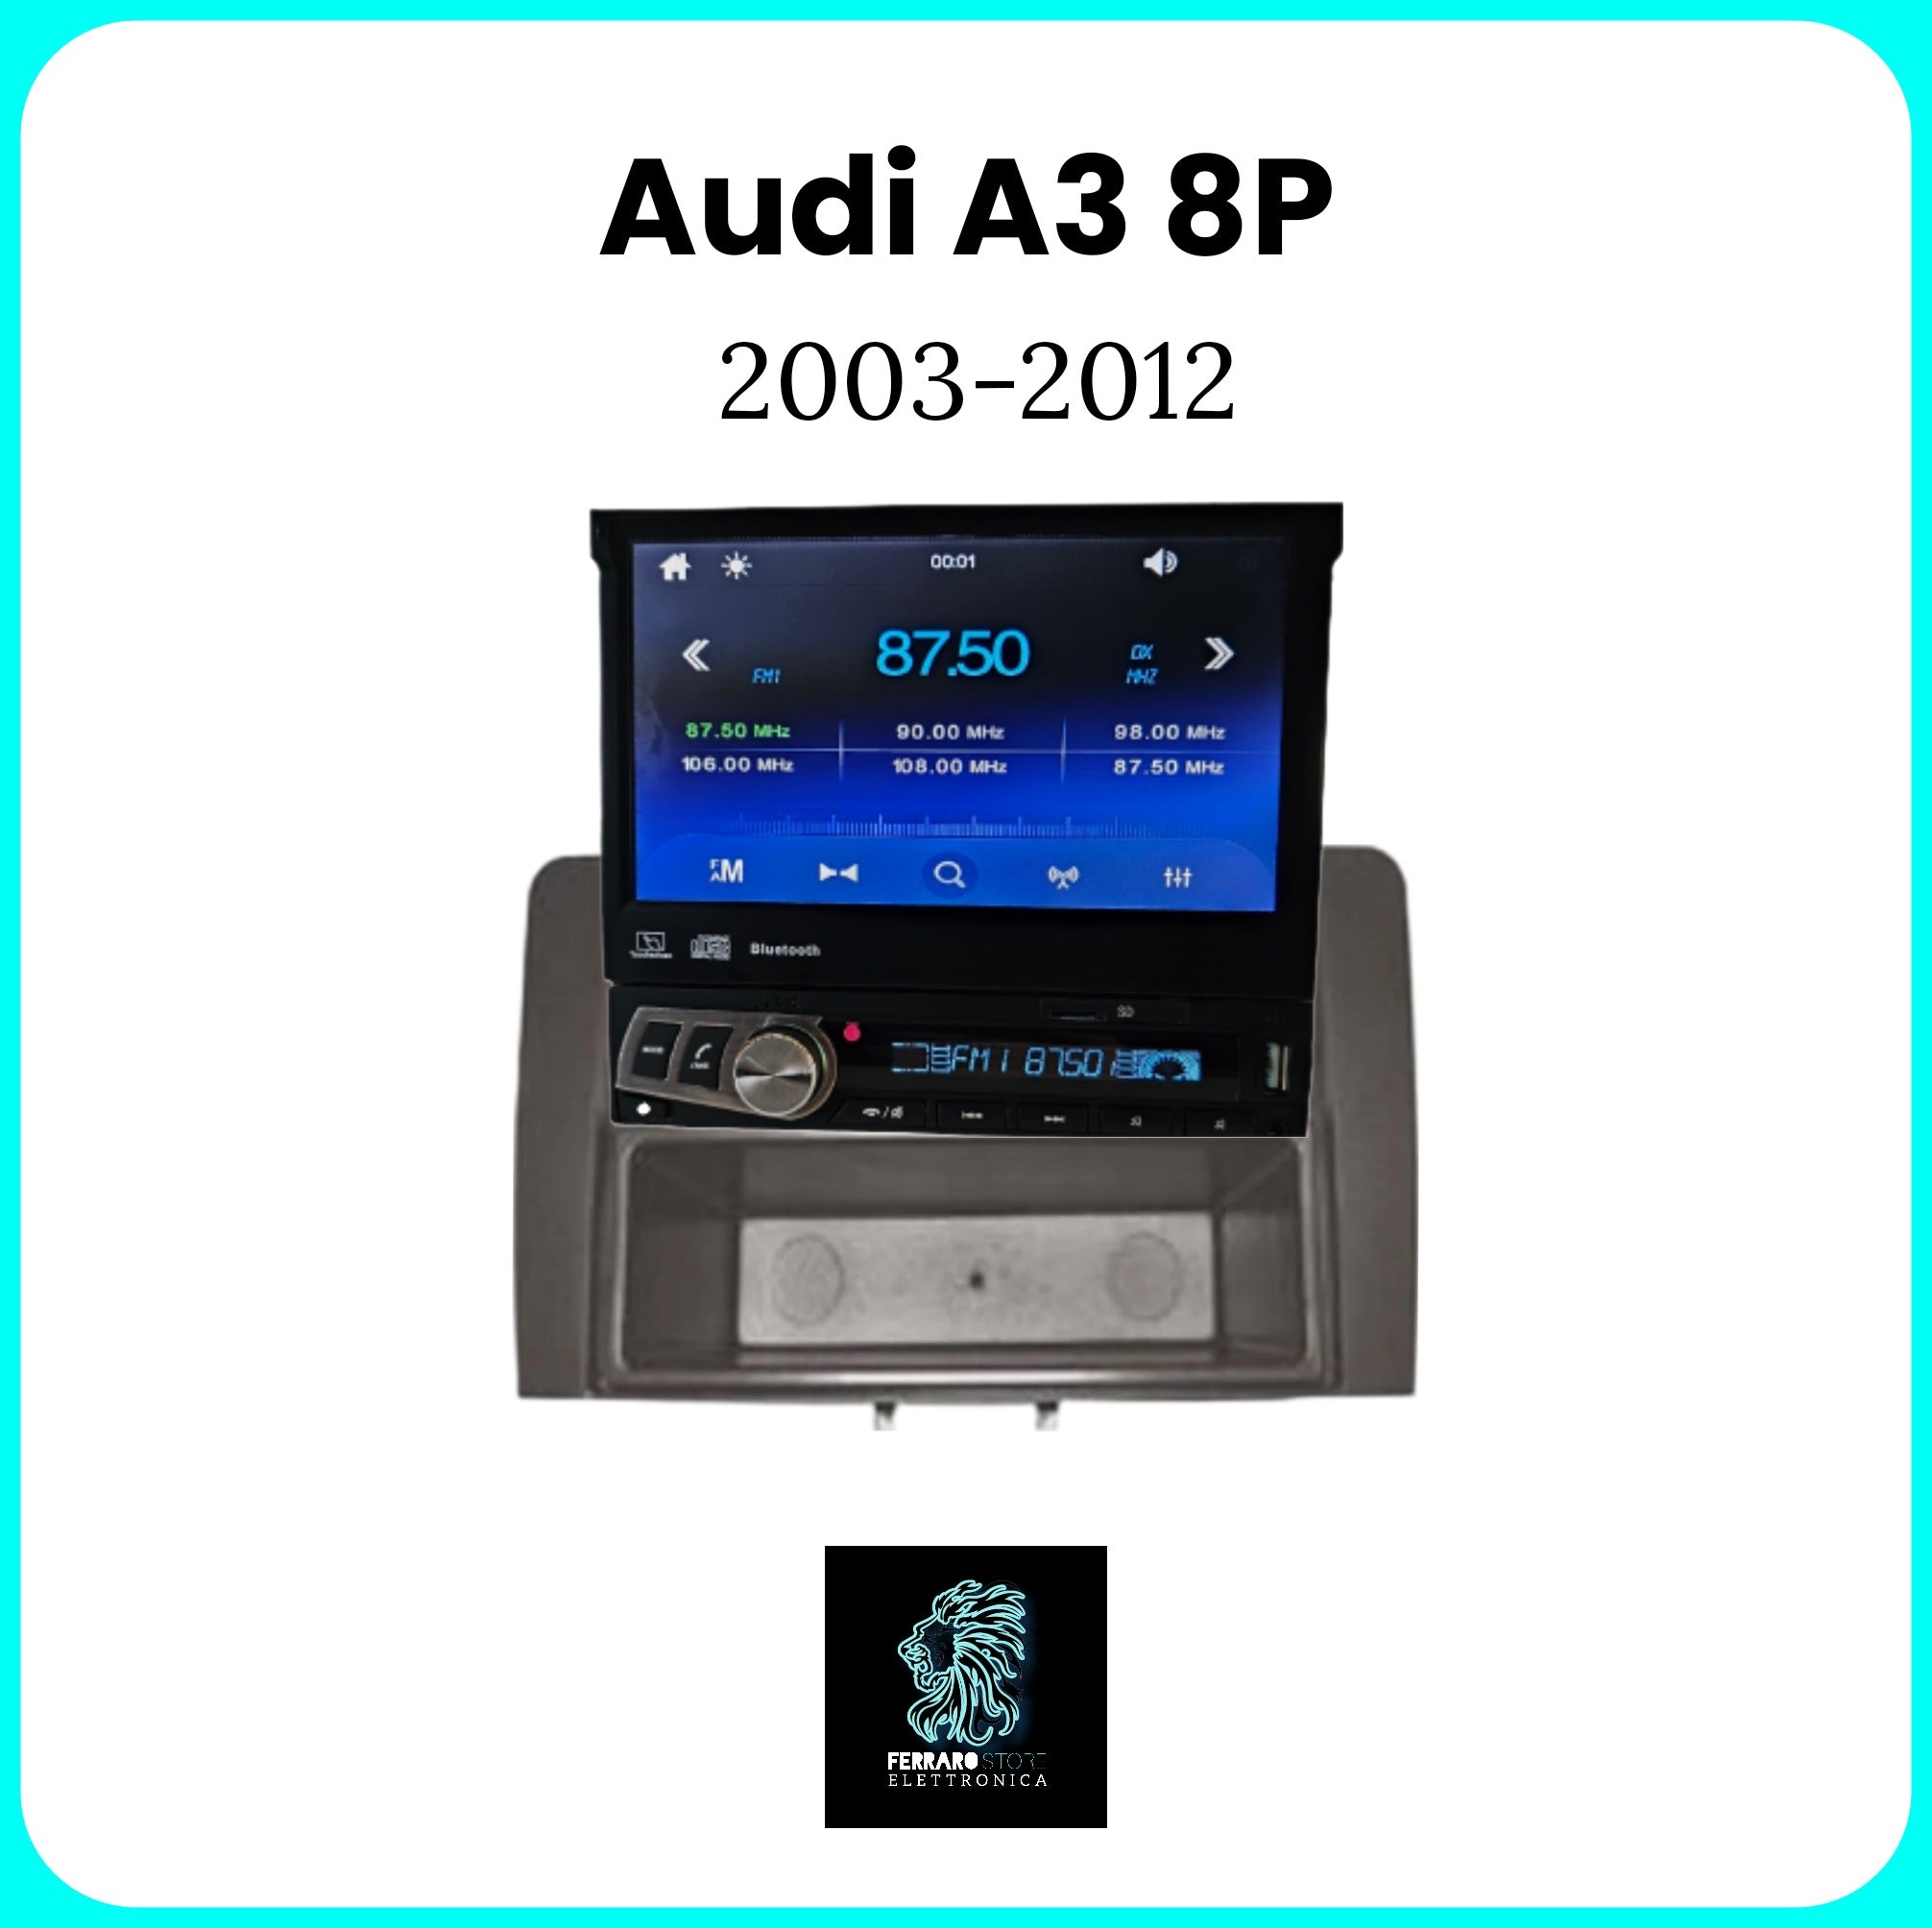 Autoradio per AUDI A3 8P [2003 - 2013] - 1Din, Schermo 7"Pollici Motorizzato, Bluetooth, Radio, USB, Mirror Link per Android